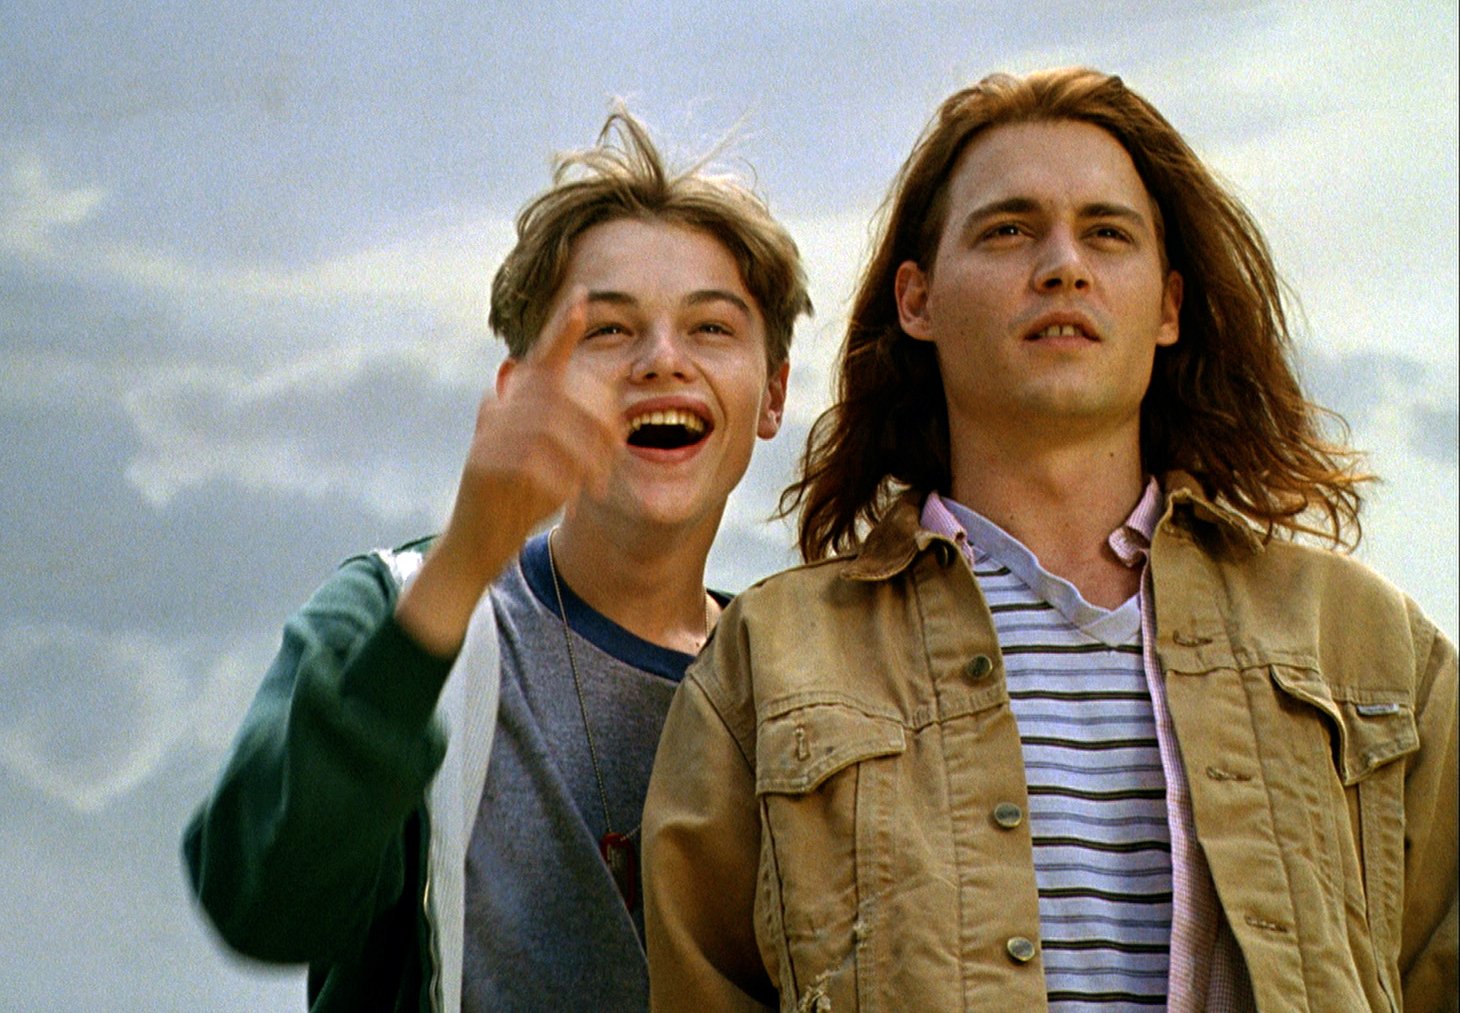 Johnny Depp om varför han torterade Leonardo DiCaprio: "Var en jobbig tid"